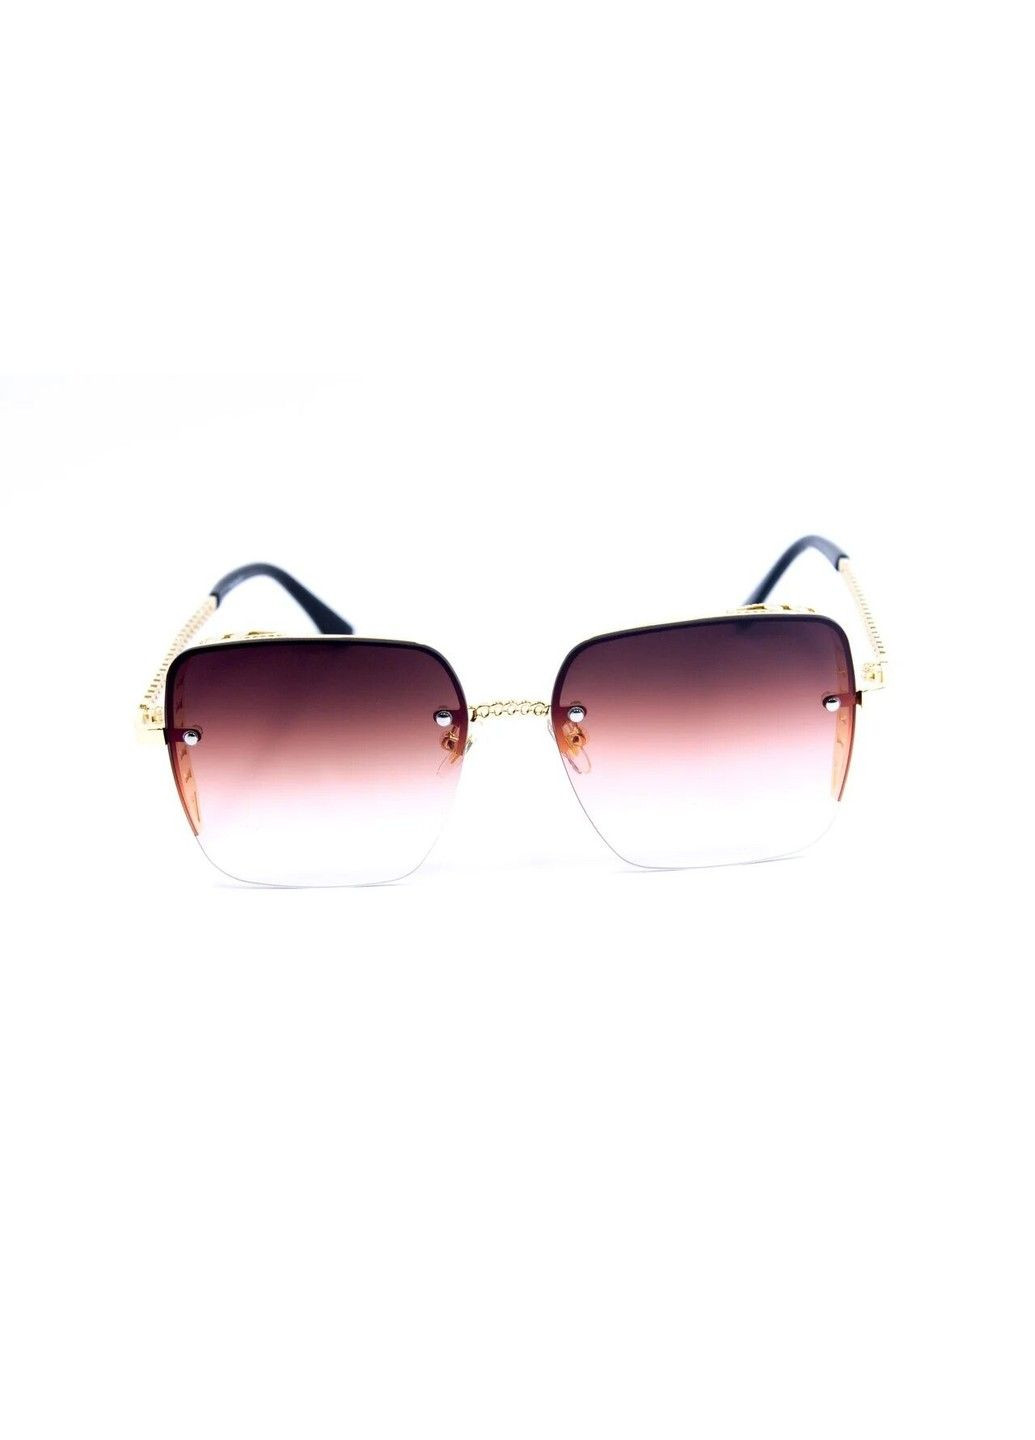 Cолнцезащитные женские очки 0398-4 BR-S (291984116)